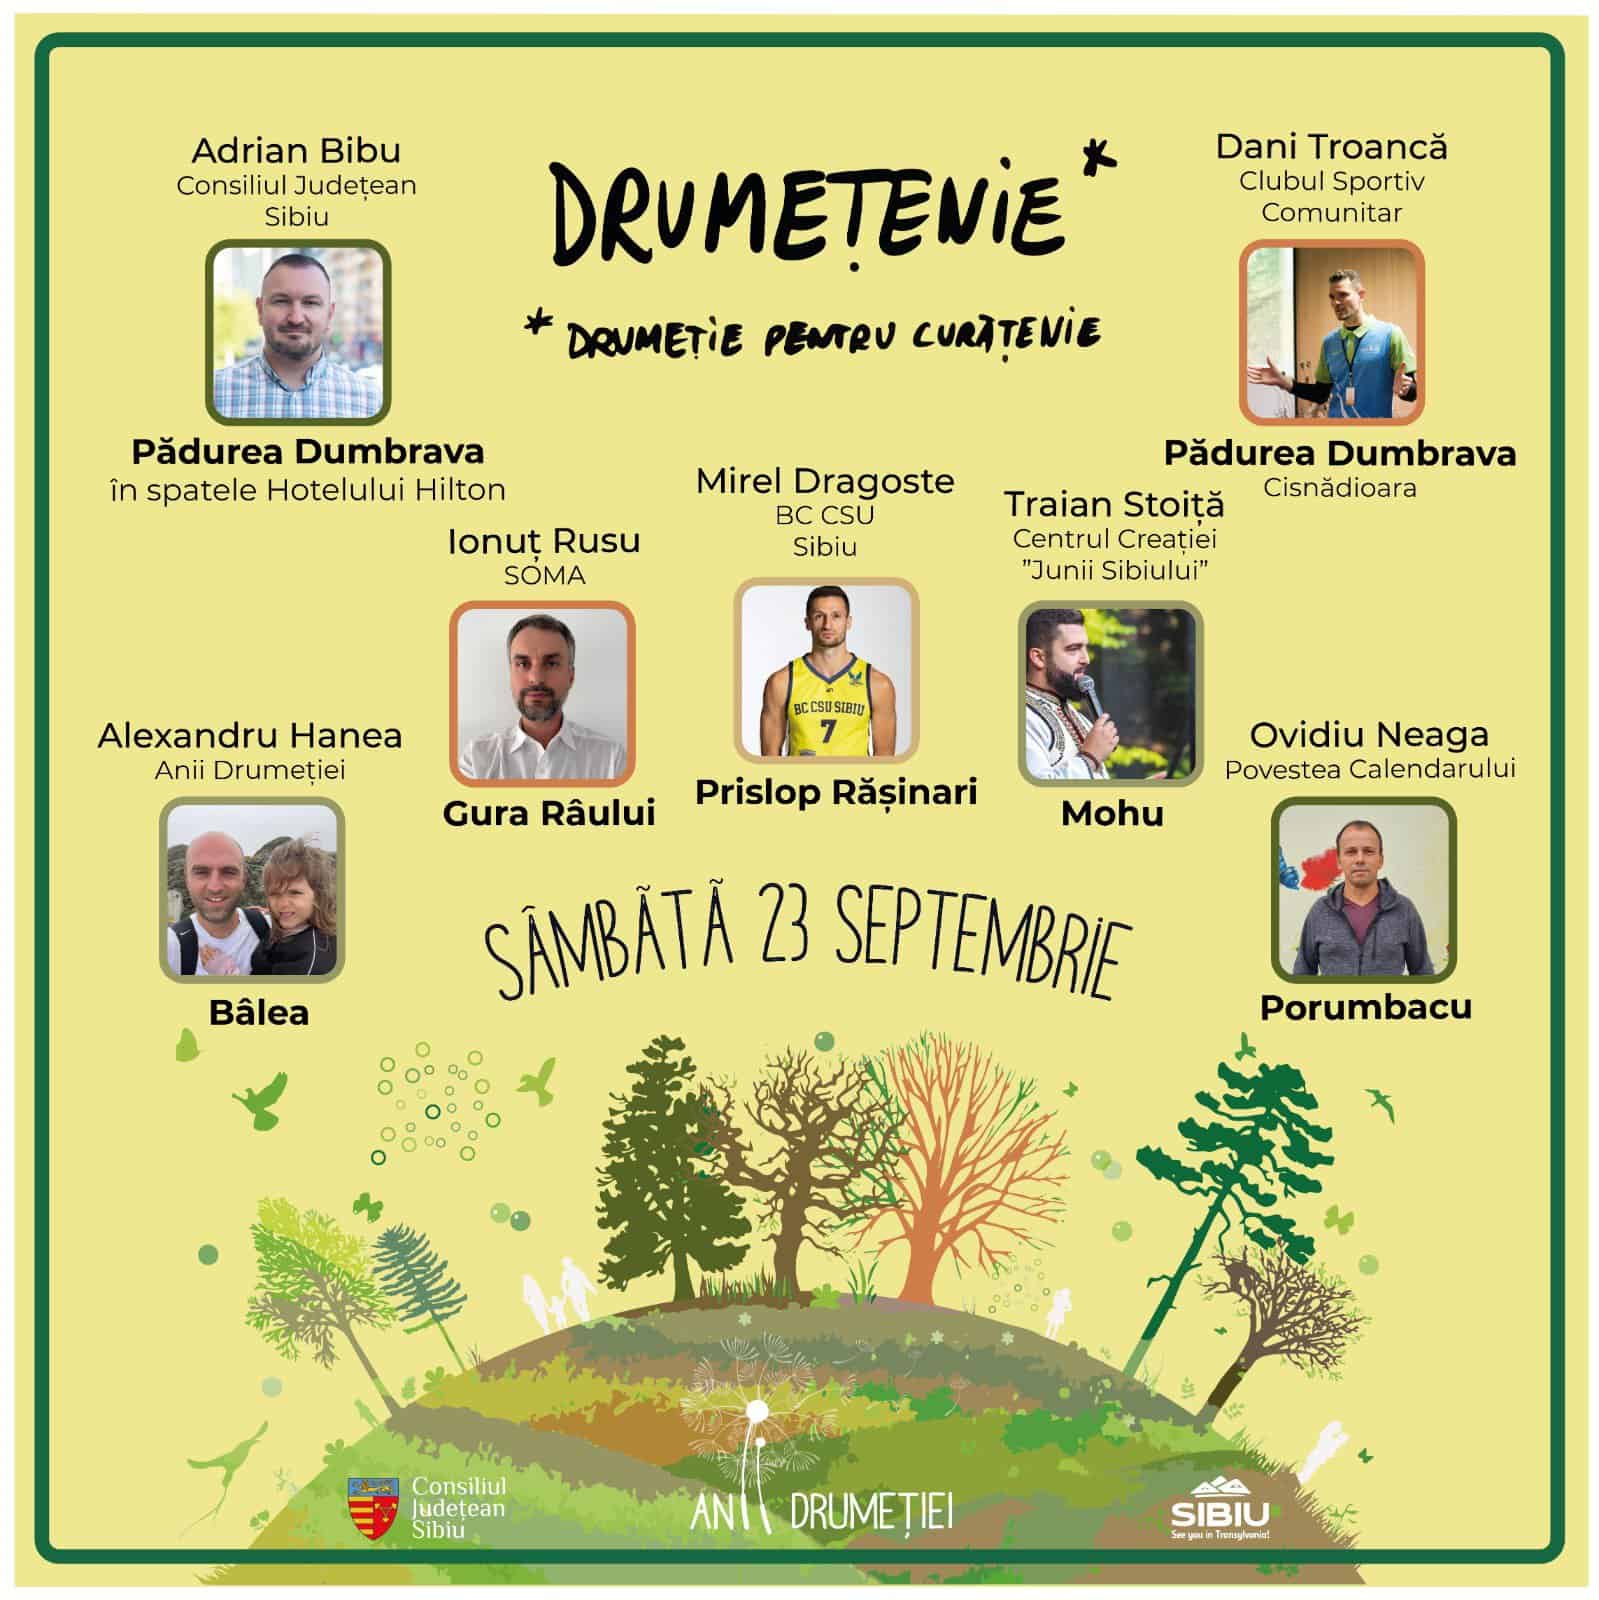 echipa „anii drumeției” cheamă iubitorii de frumos la o nouă campanie de ecologizare a județului sibiu